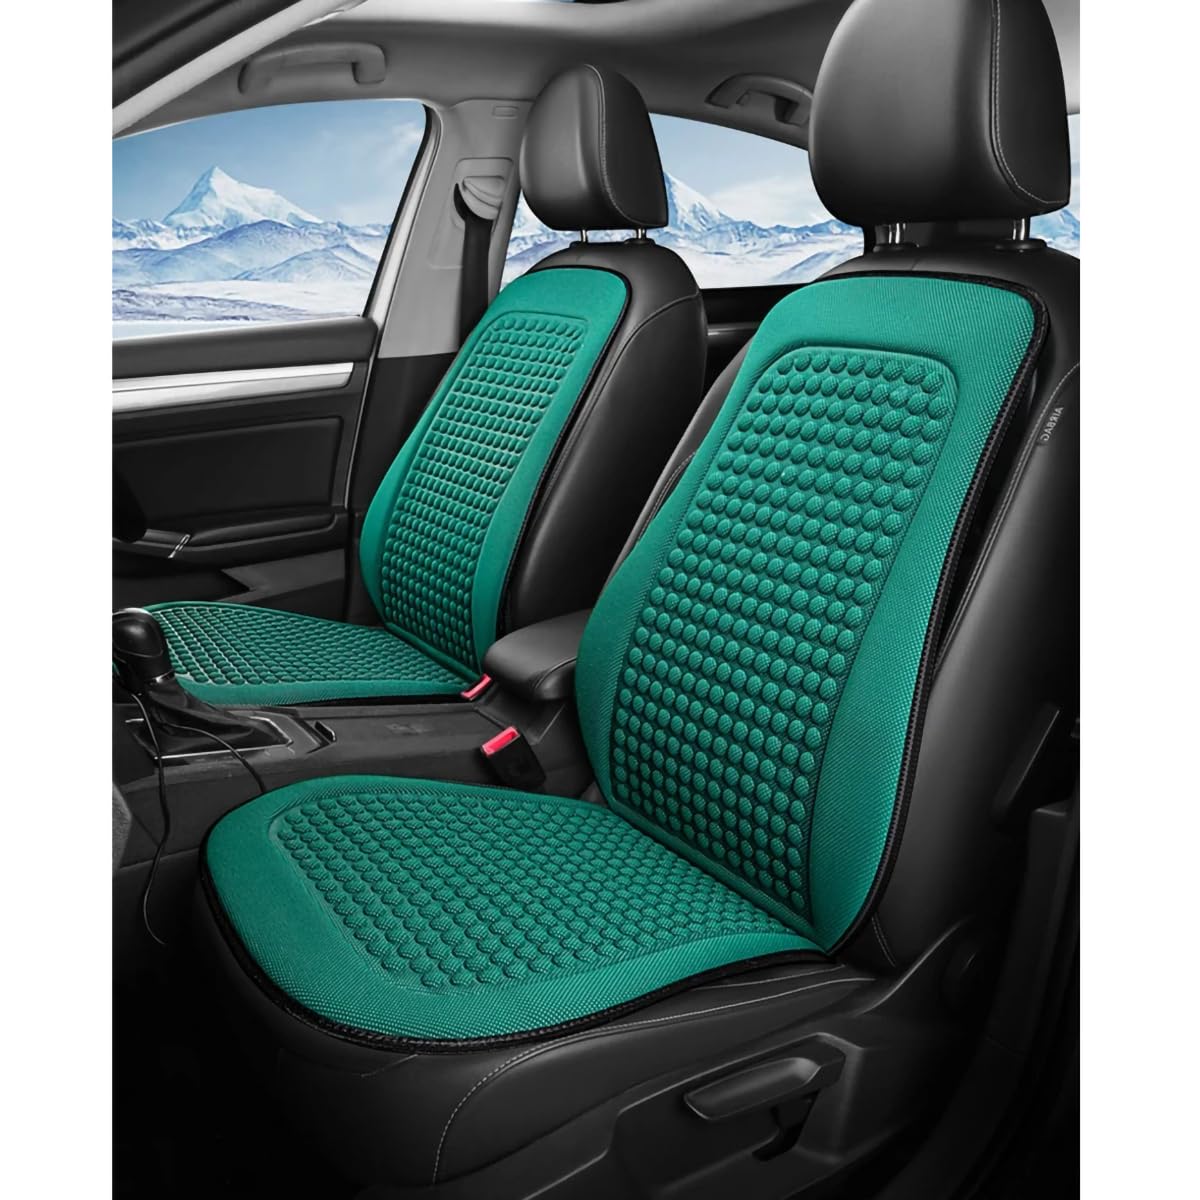 Spulhc Autositzbezug für Mercedes Benz C Class W205 2014-2018 2019 2020, kühles Sitzkissen aus Eisseide, kühlendes/atmungsaktives Kissen,B-green-2 set von Spulhc